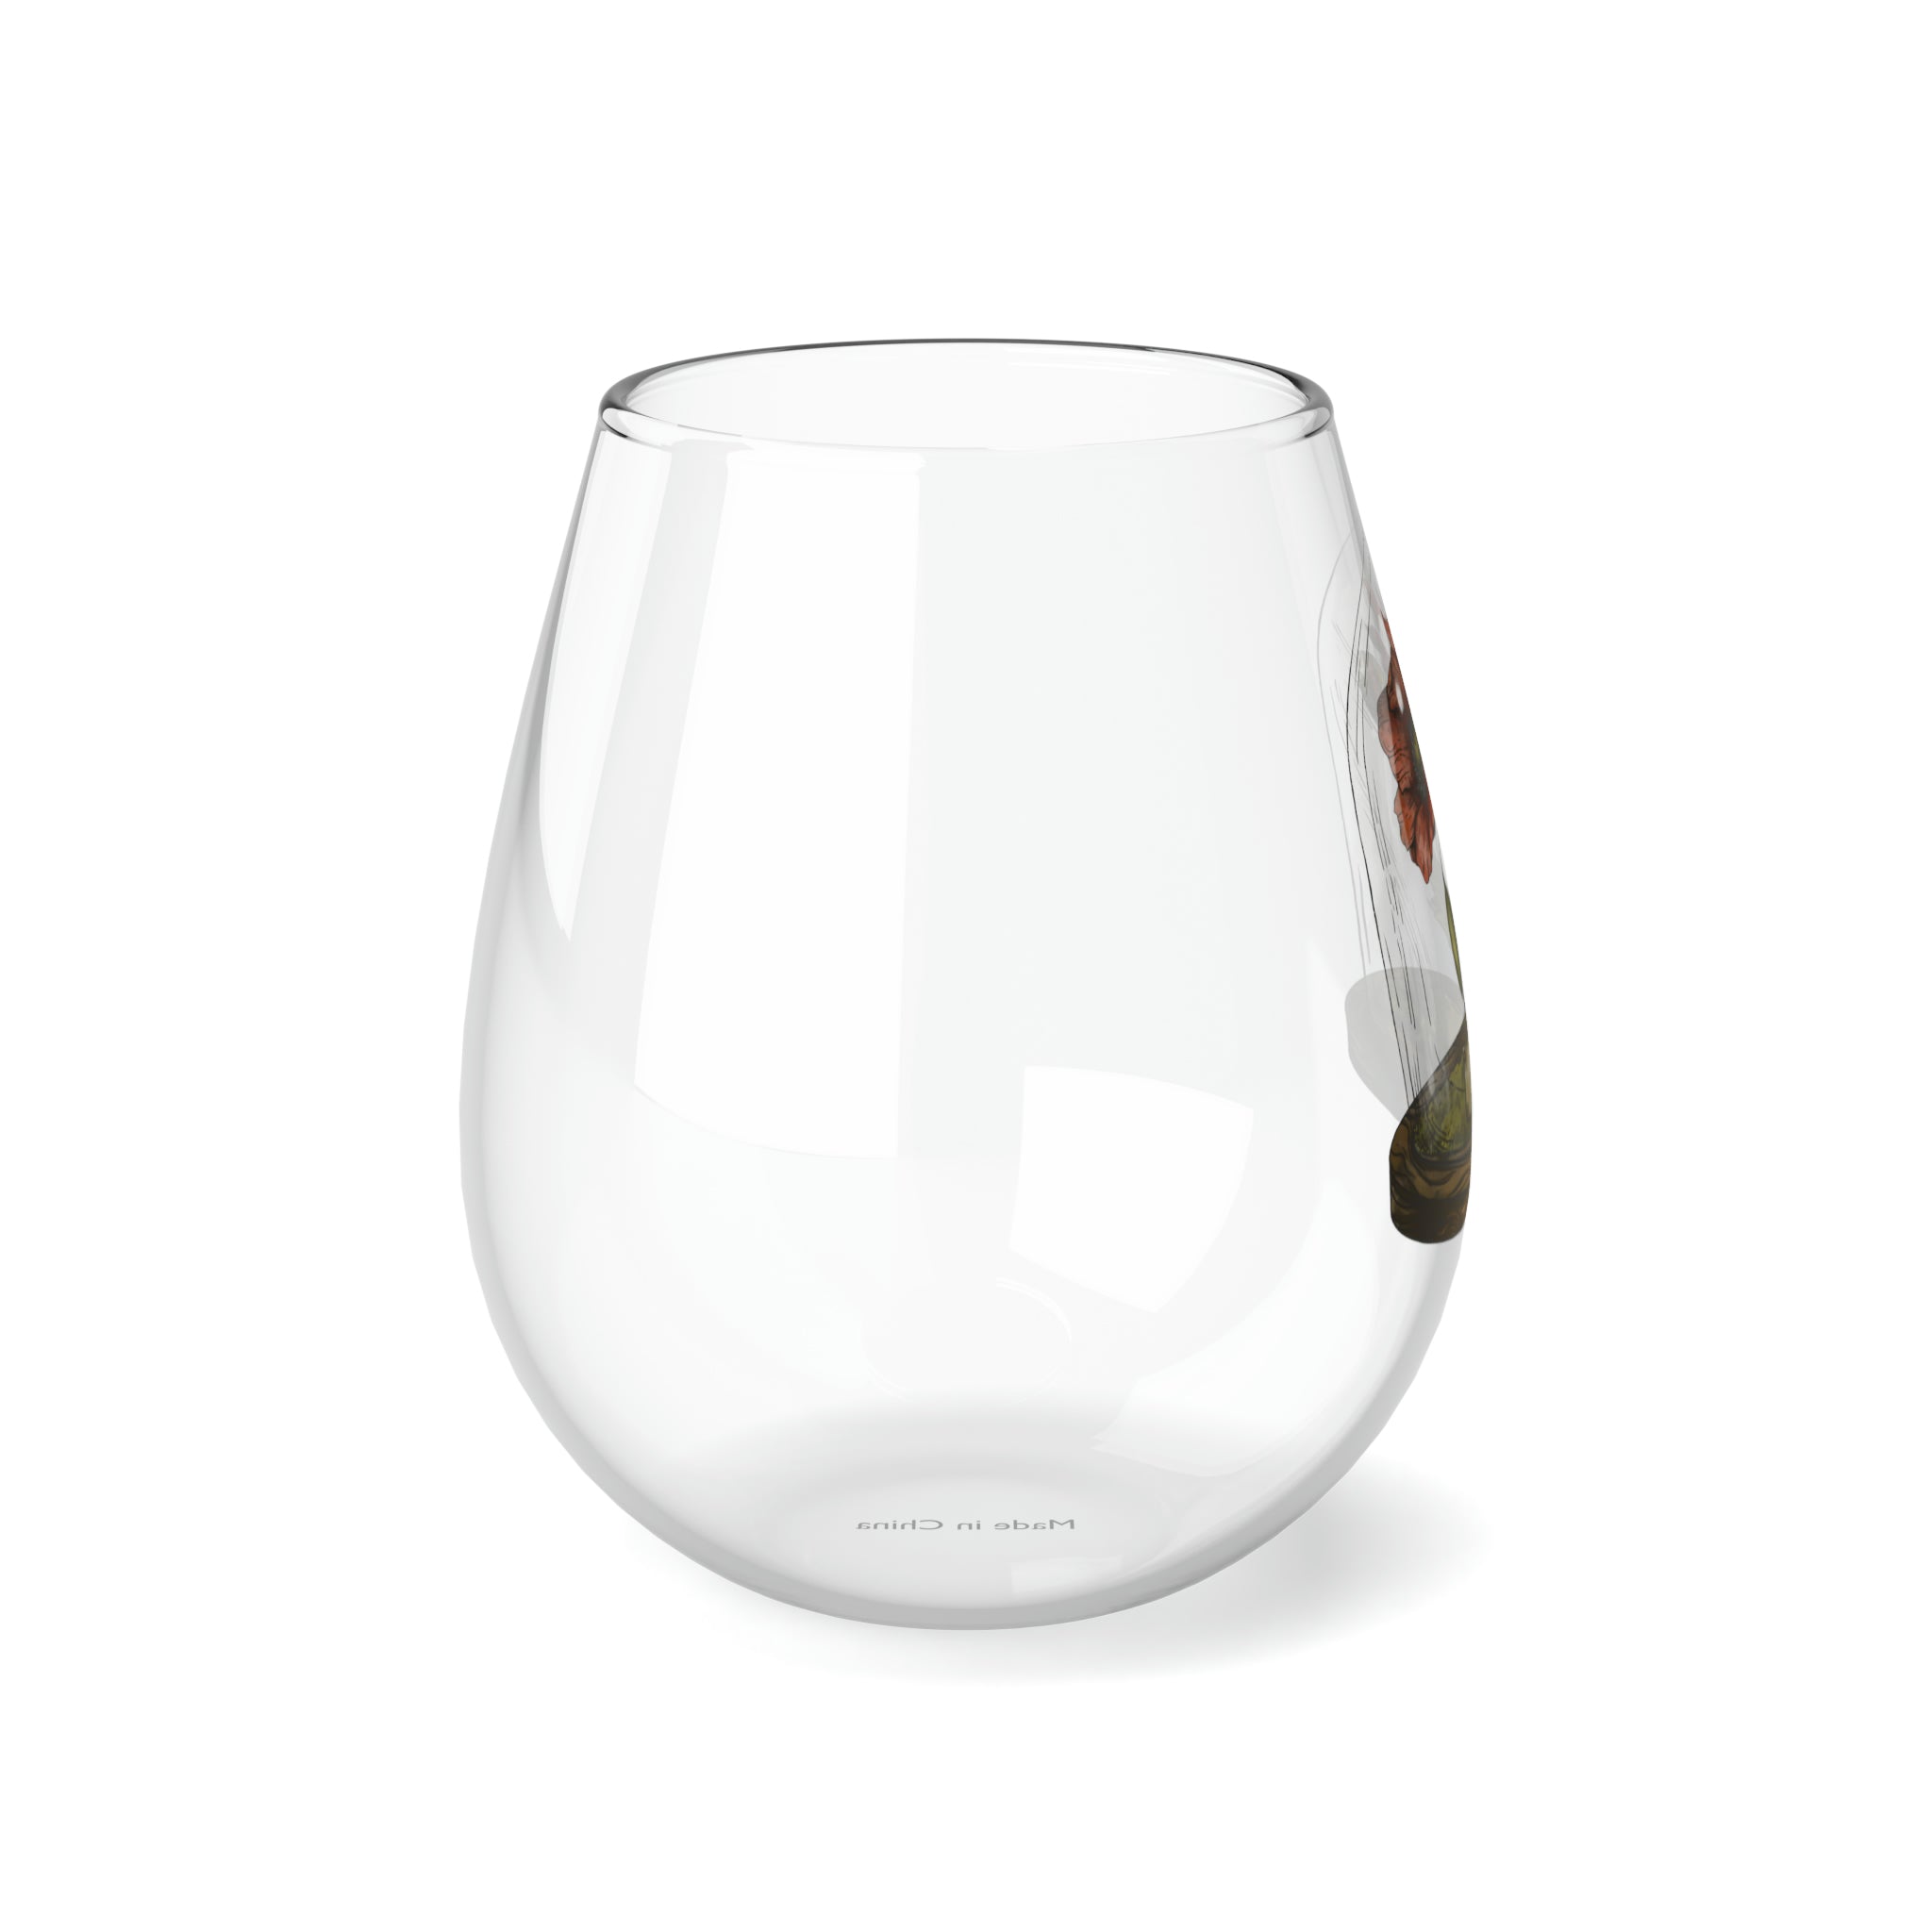 August Birth Flower - Stemless Wine Glass, 11.75oz